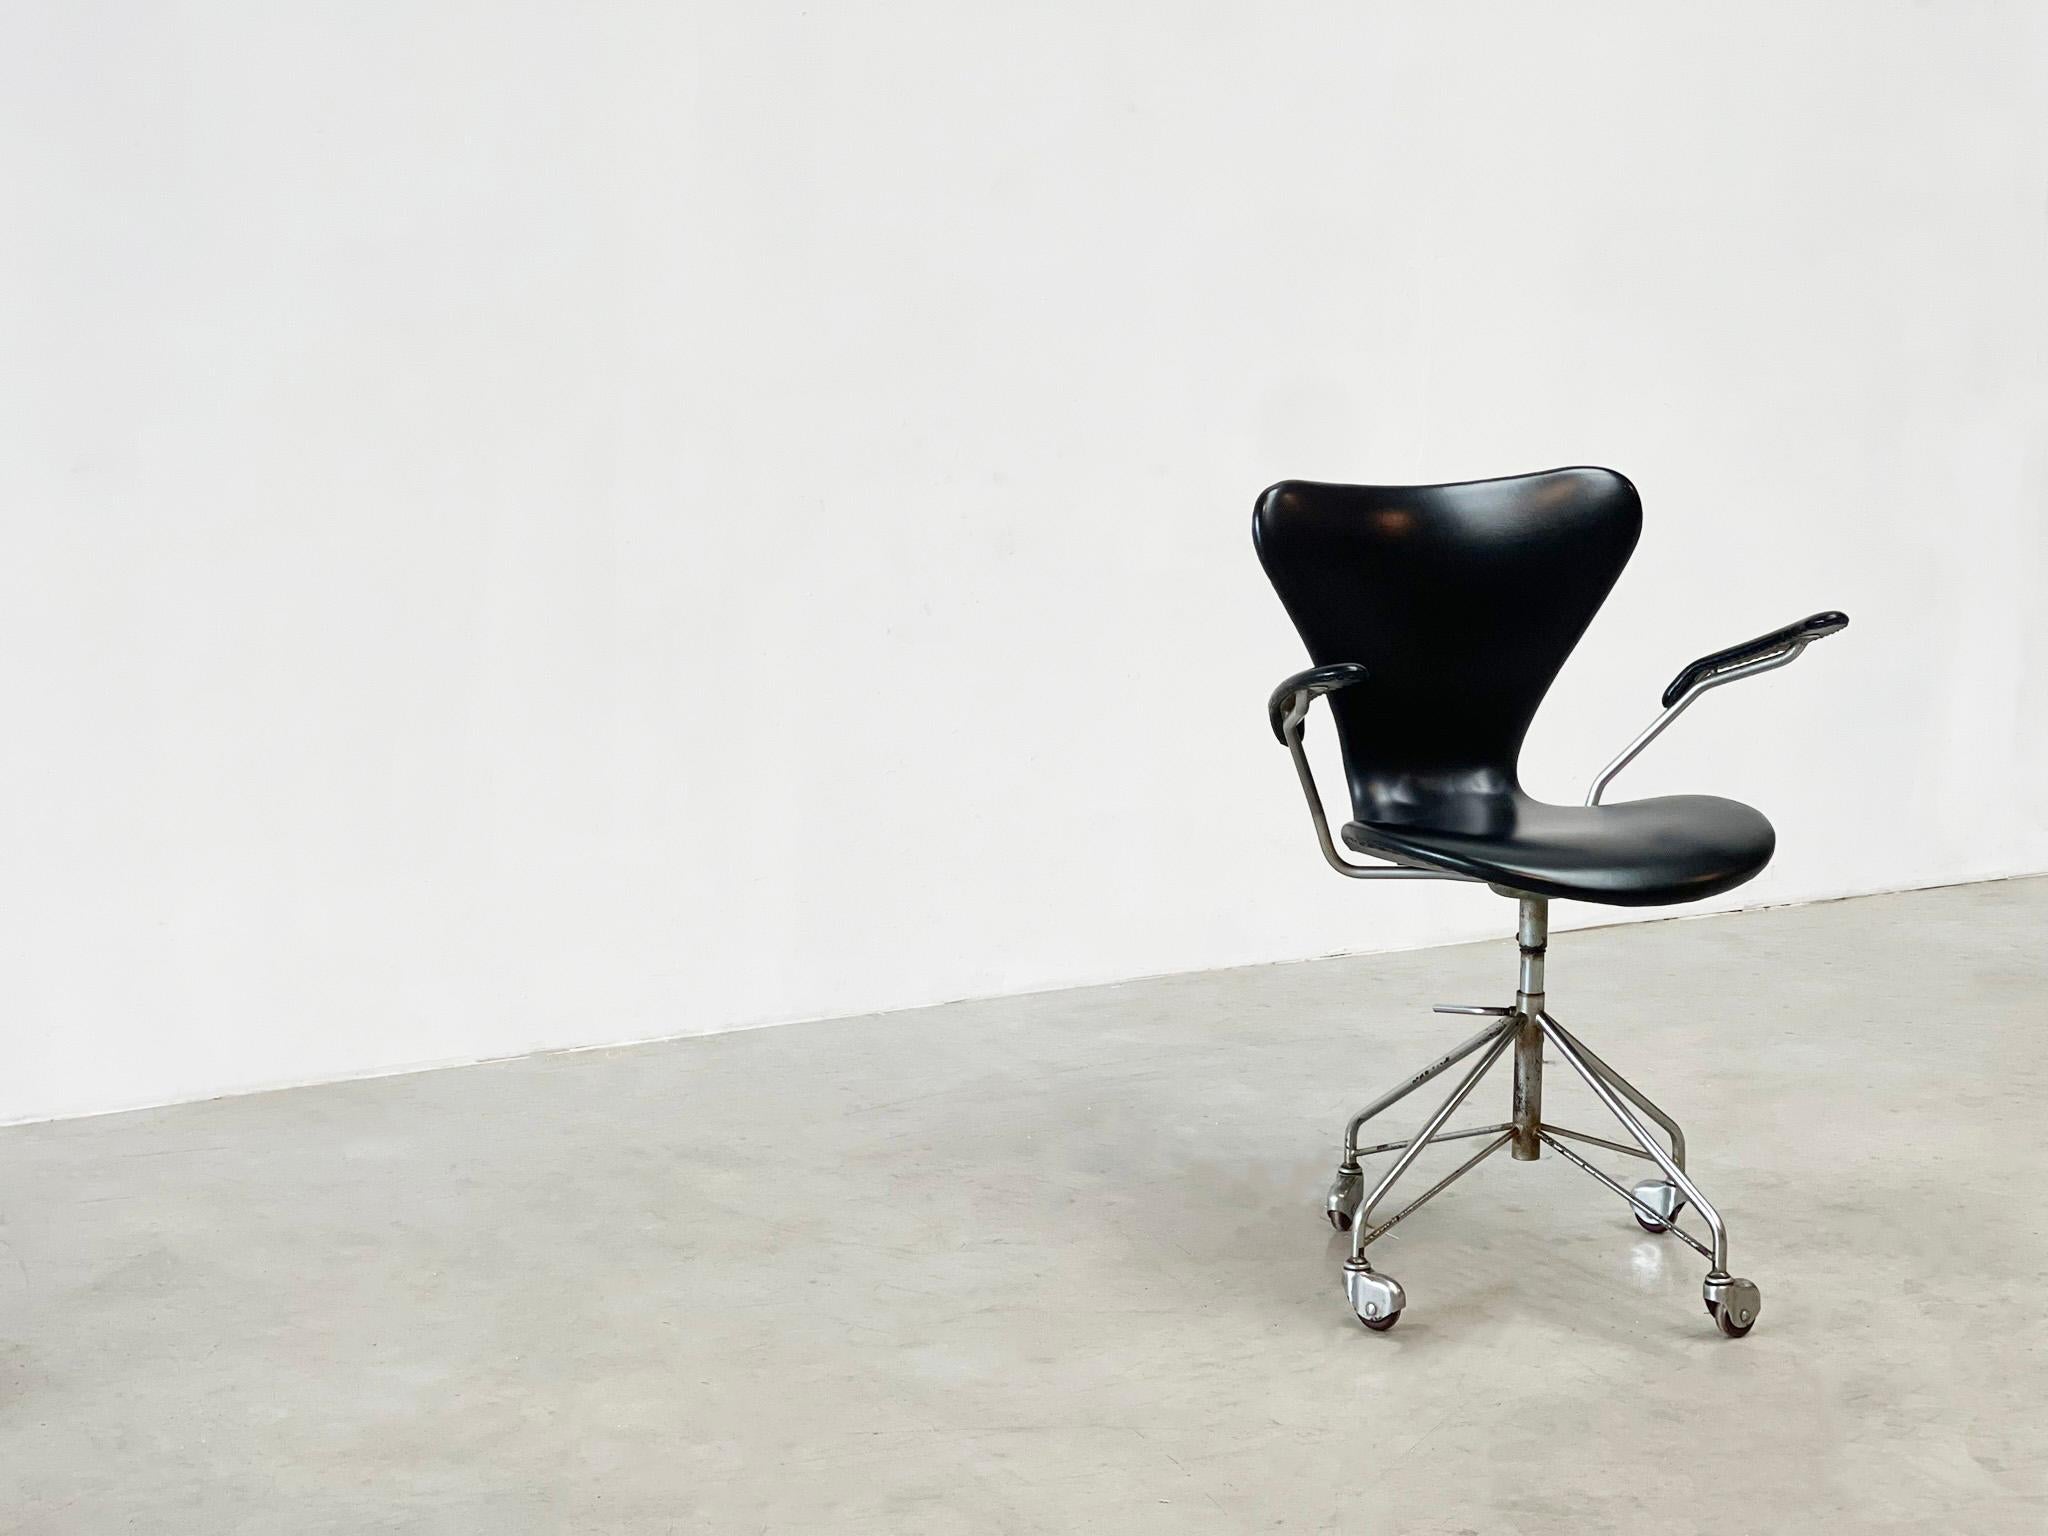 Der frühe Bürostuhl 3217 von einem der berühmtesten und besten Designer Dänemarks, Arne Jacobsen. Arne Jacobsen entwarf diesen Bürostuhl in den 50er Jahren für Fritz Hansen.

 

Dieser Stuhl stammt aus den 60er Jahren, ist also ein frühes Modell.